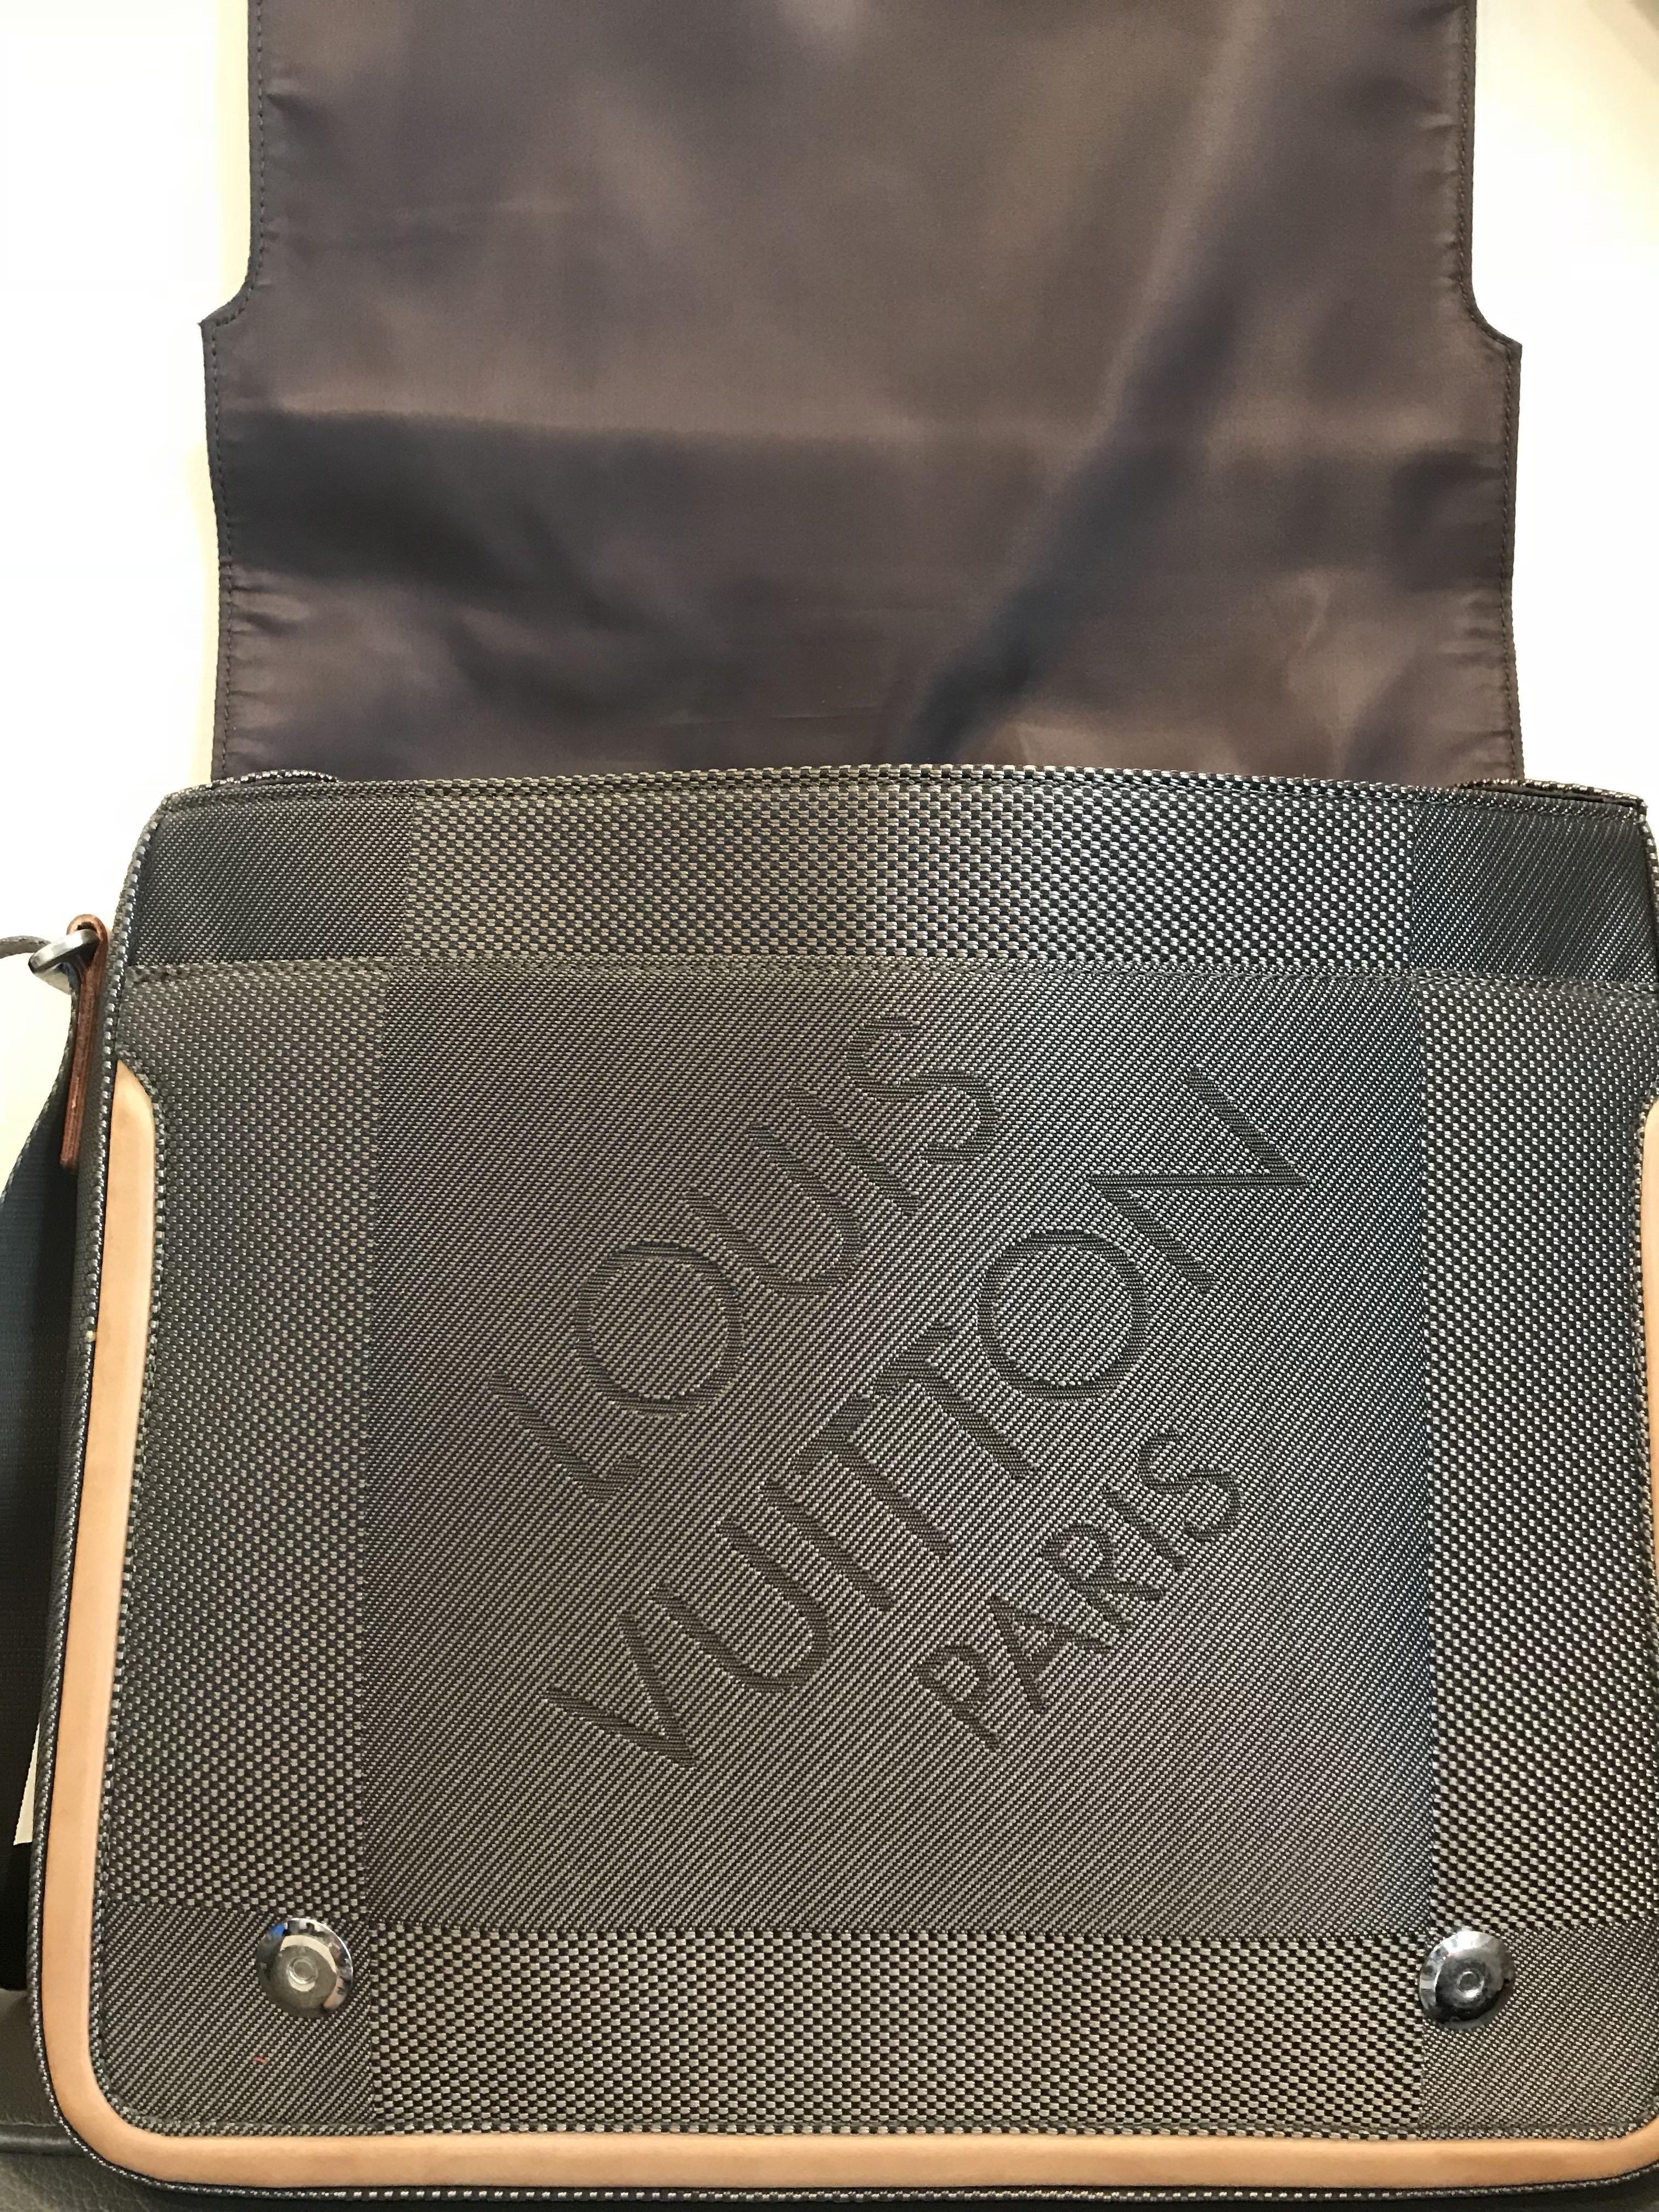 Louis Vuitton Terre Damier Geant Canvas Messenger Bag  Canvas messenger  bag, Messenger bag, Cowhide leather